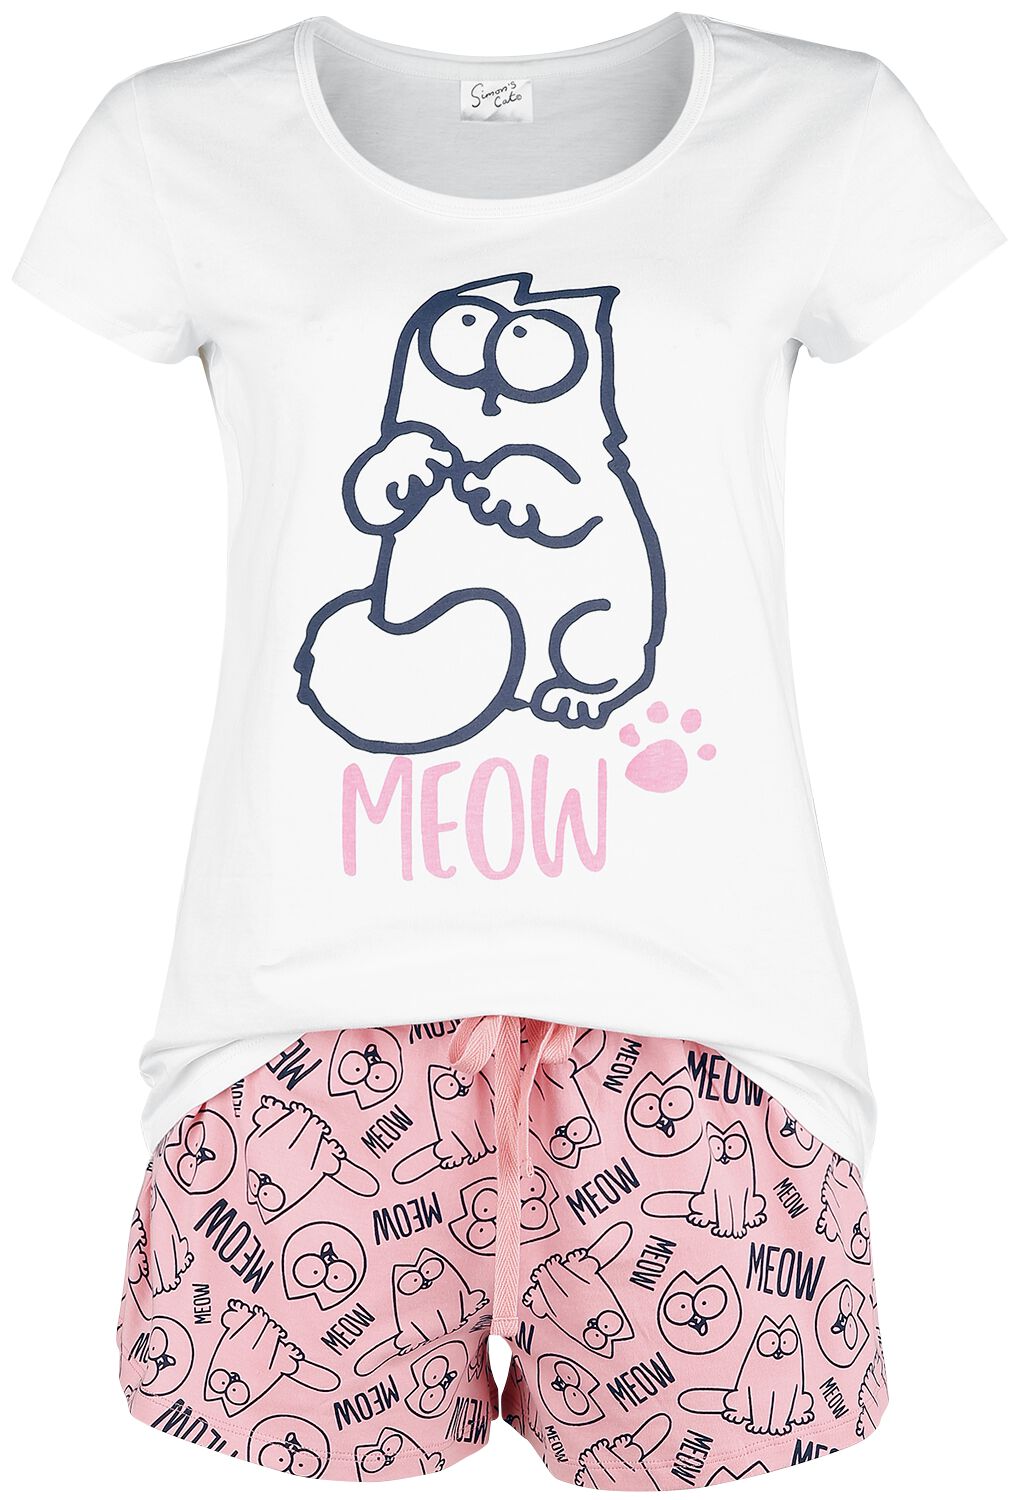 simons cat schlafanzug - meow - m bis 3xl - fÃ¼r damen - grÃ¶ÃŸe 3xl - - emp exklusives merchandise! weiÃŸ/rosa donna